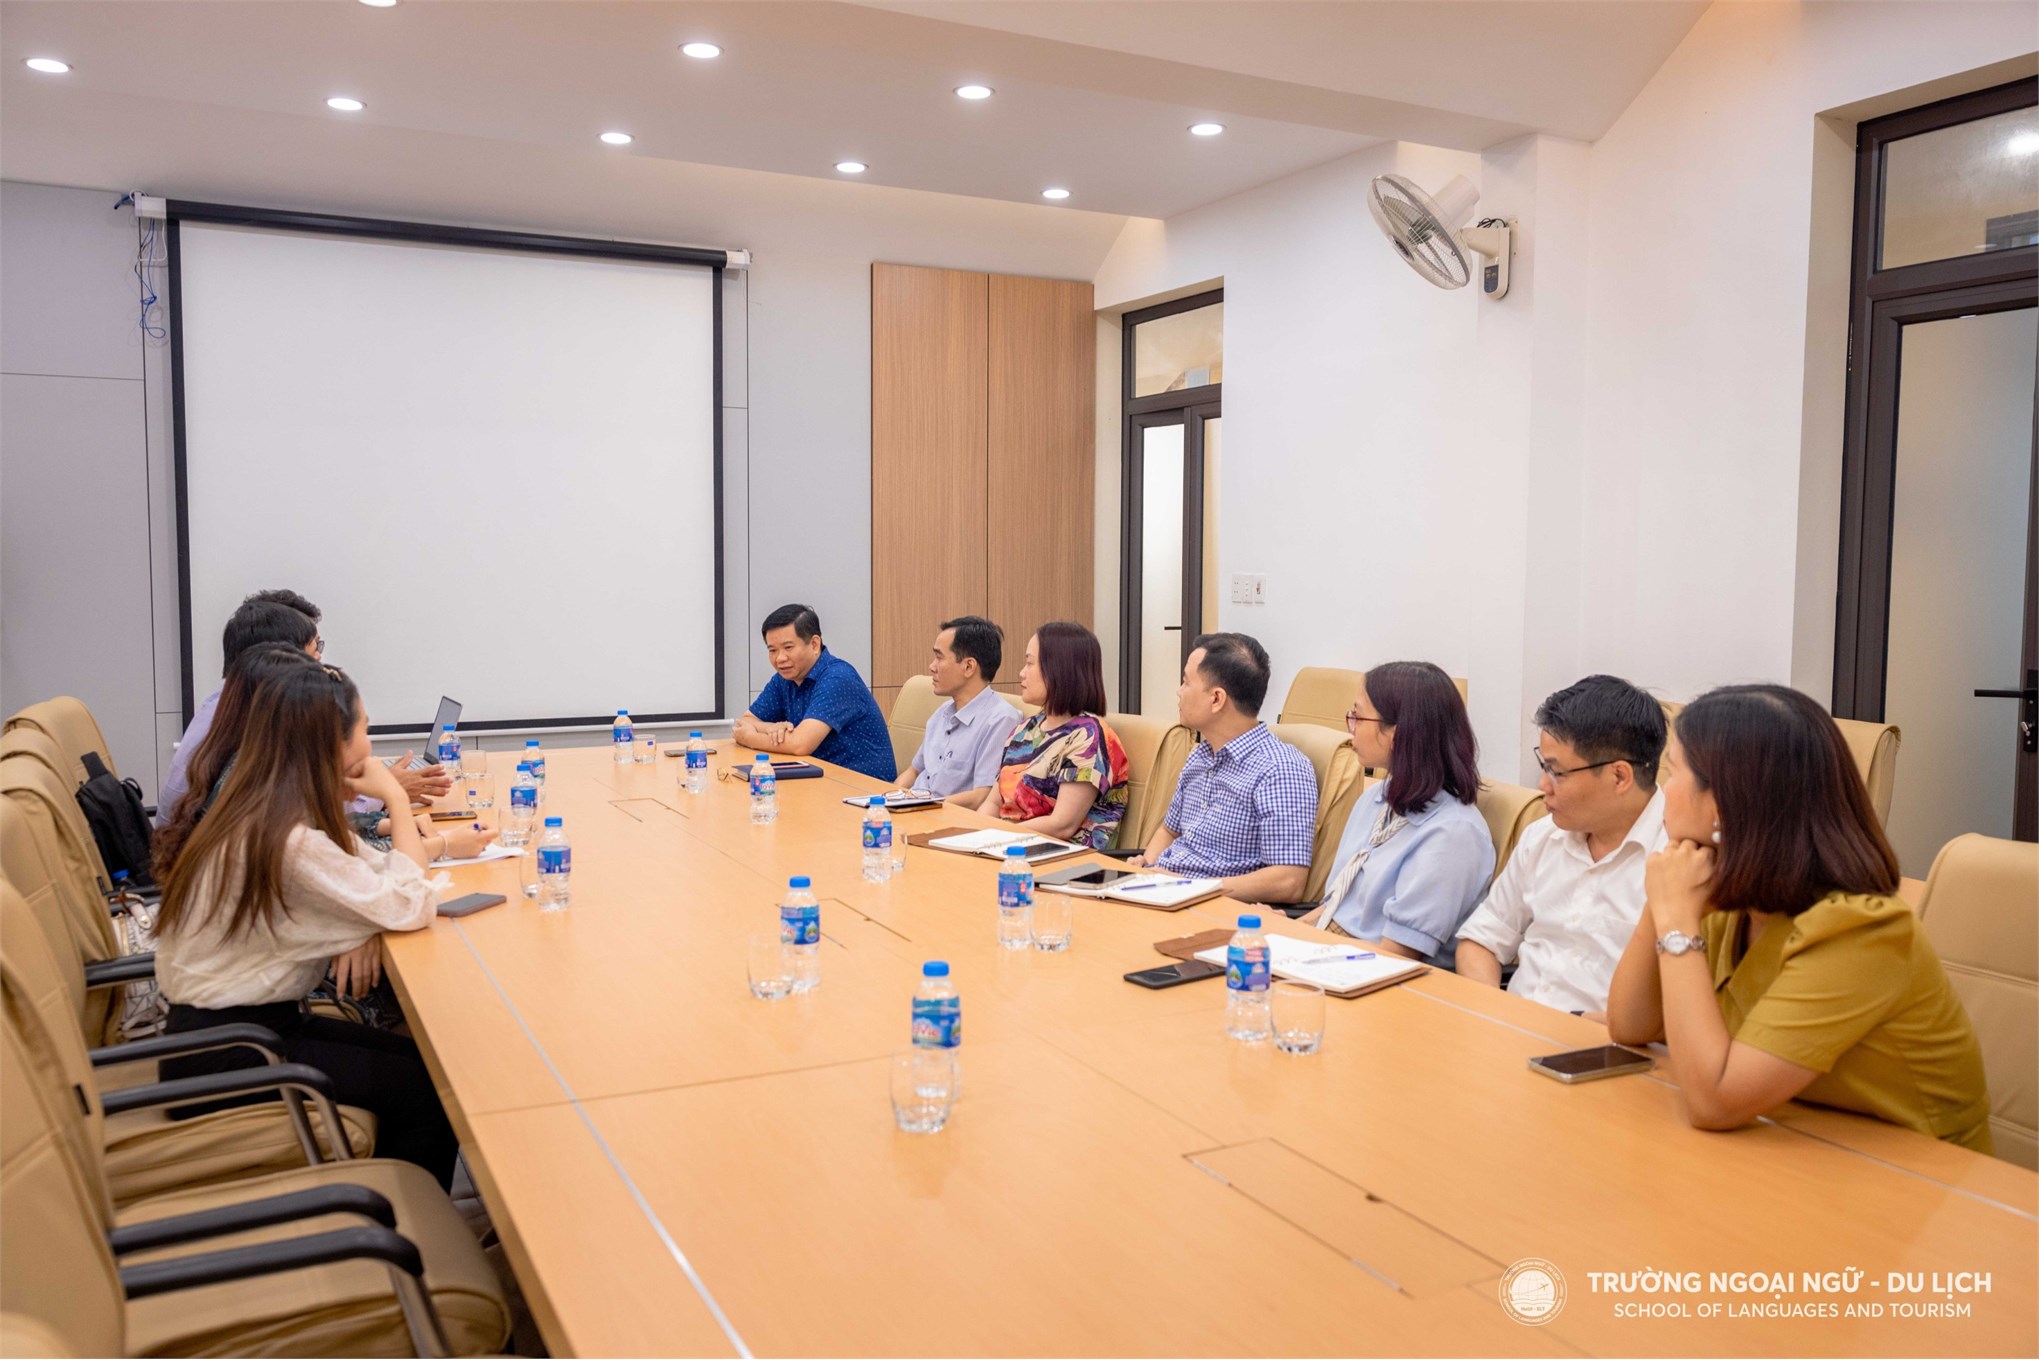 Trường Đại học Công nghiệp Thực phẩm Thành phố Hồ Chí Minh thăm và làm việc tại Trường Ngoại ngữ - Du lịch thuộc Trường Đại học Công nghiệp Hà Nội